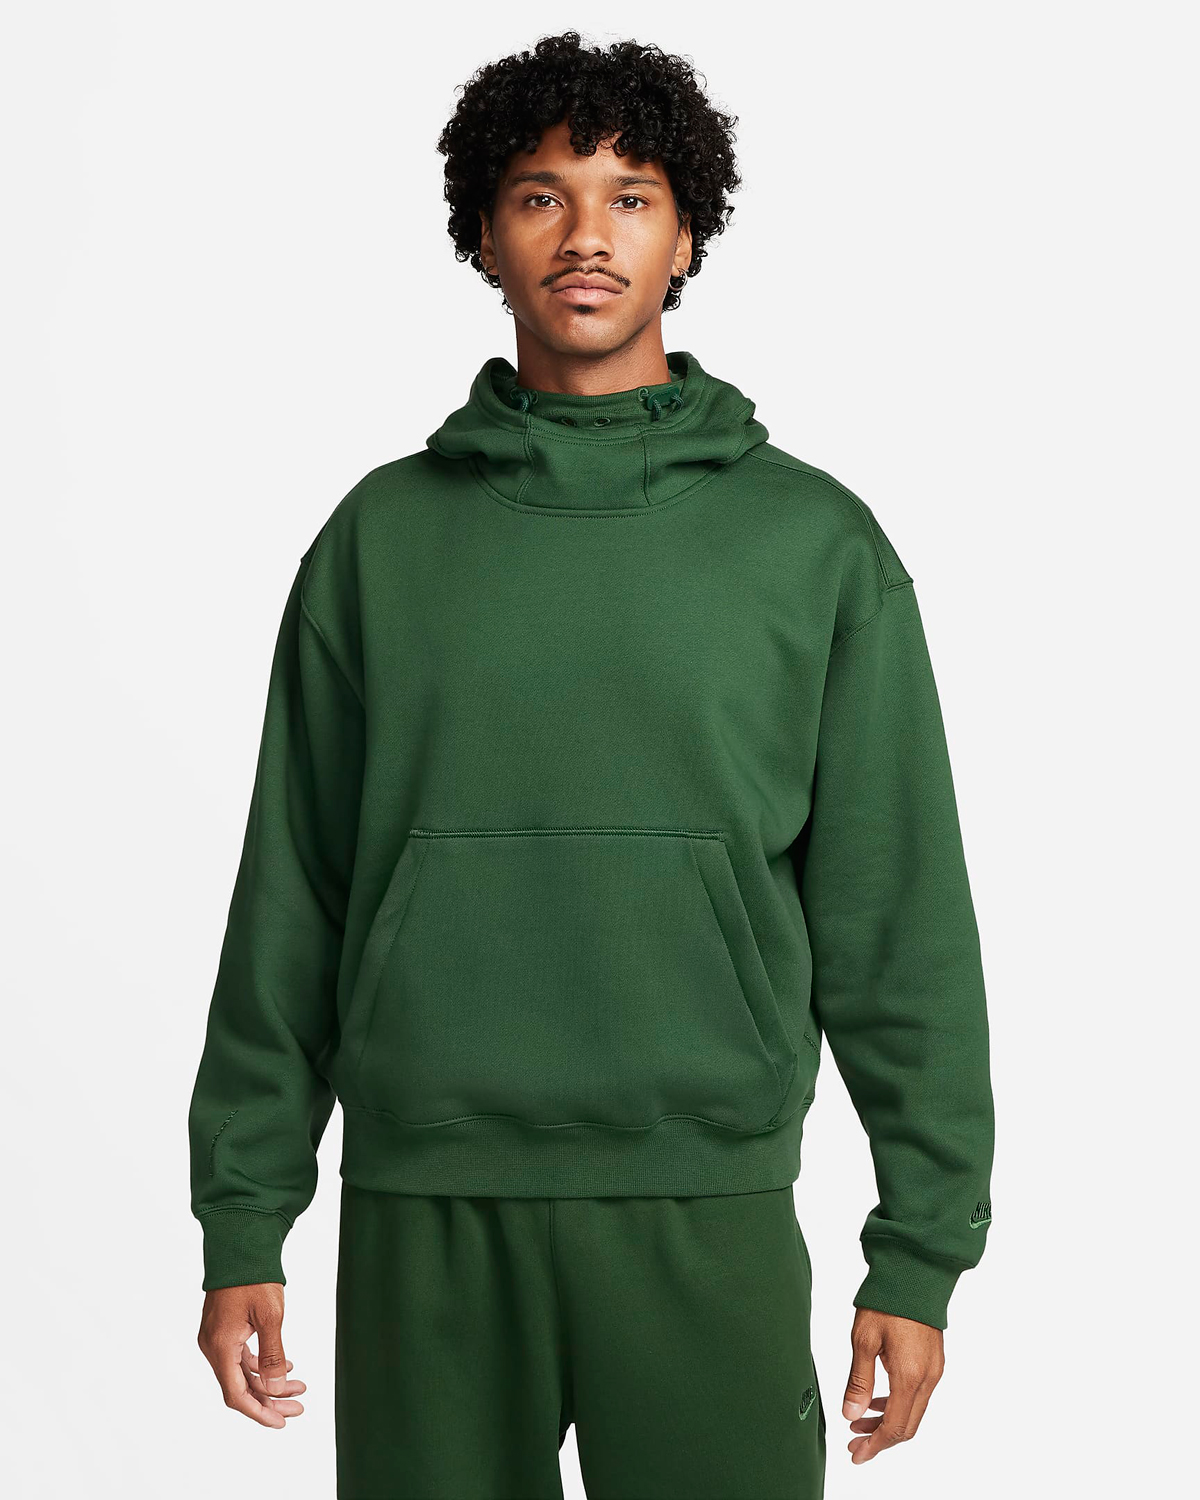 Nike-Sportswear-Tech-Pack-Winterized-Hoodie-Fir-Green-1